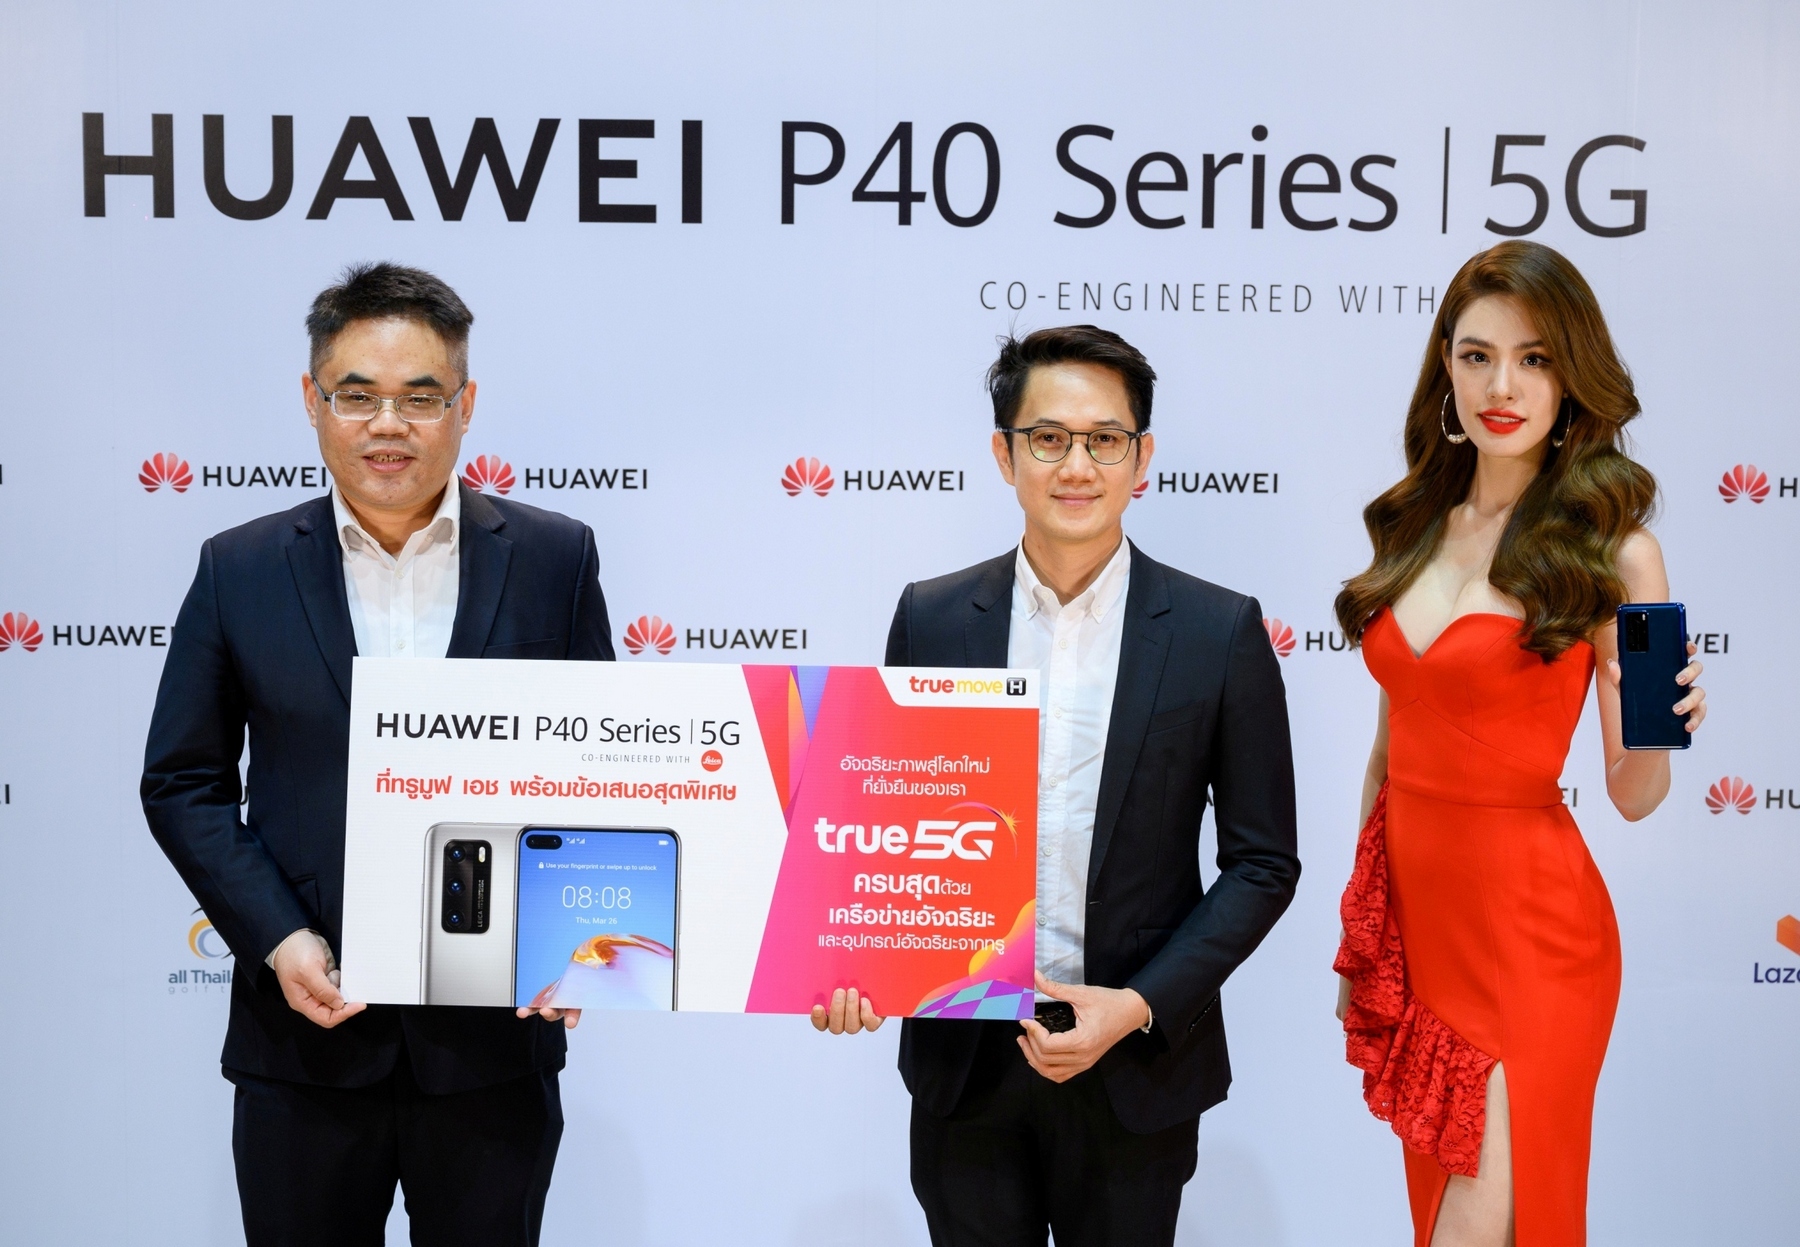 ทรูมูฟ เอช เปิดจอง HUAWEI P40 Series I 5G เริ่มต้นเพียง 5,490 บาท จองได้ตั้งแต่ 1630 เม.ย. นี้